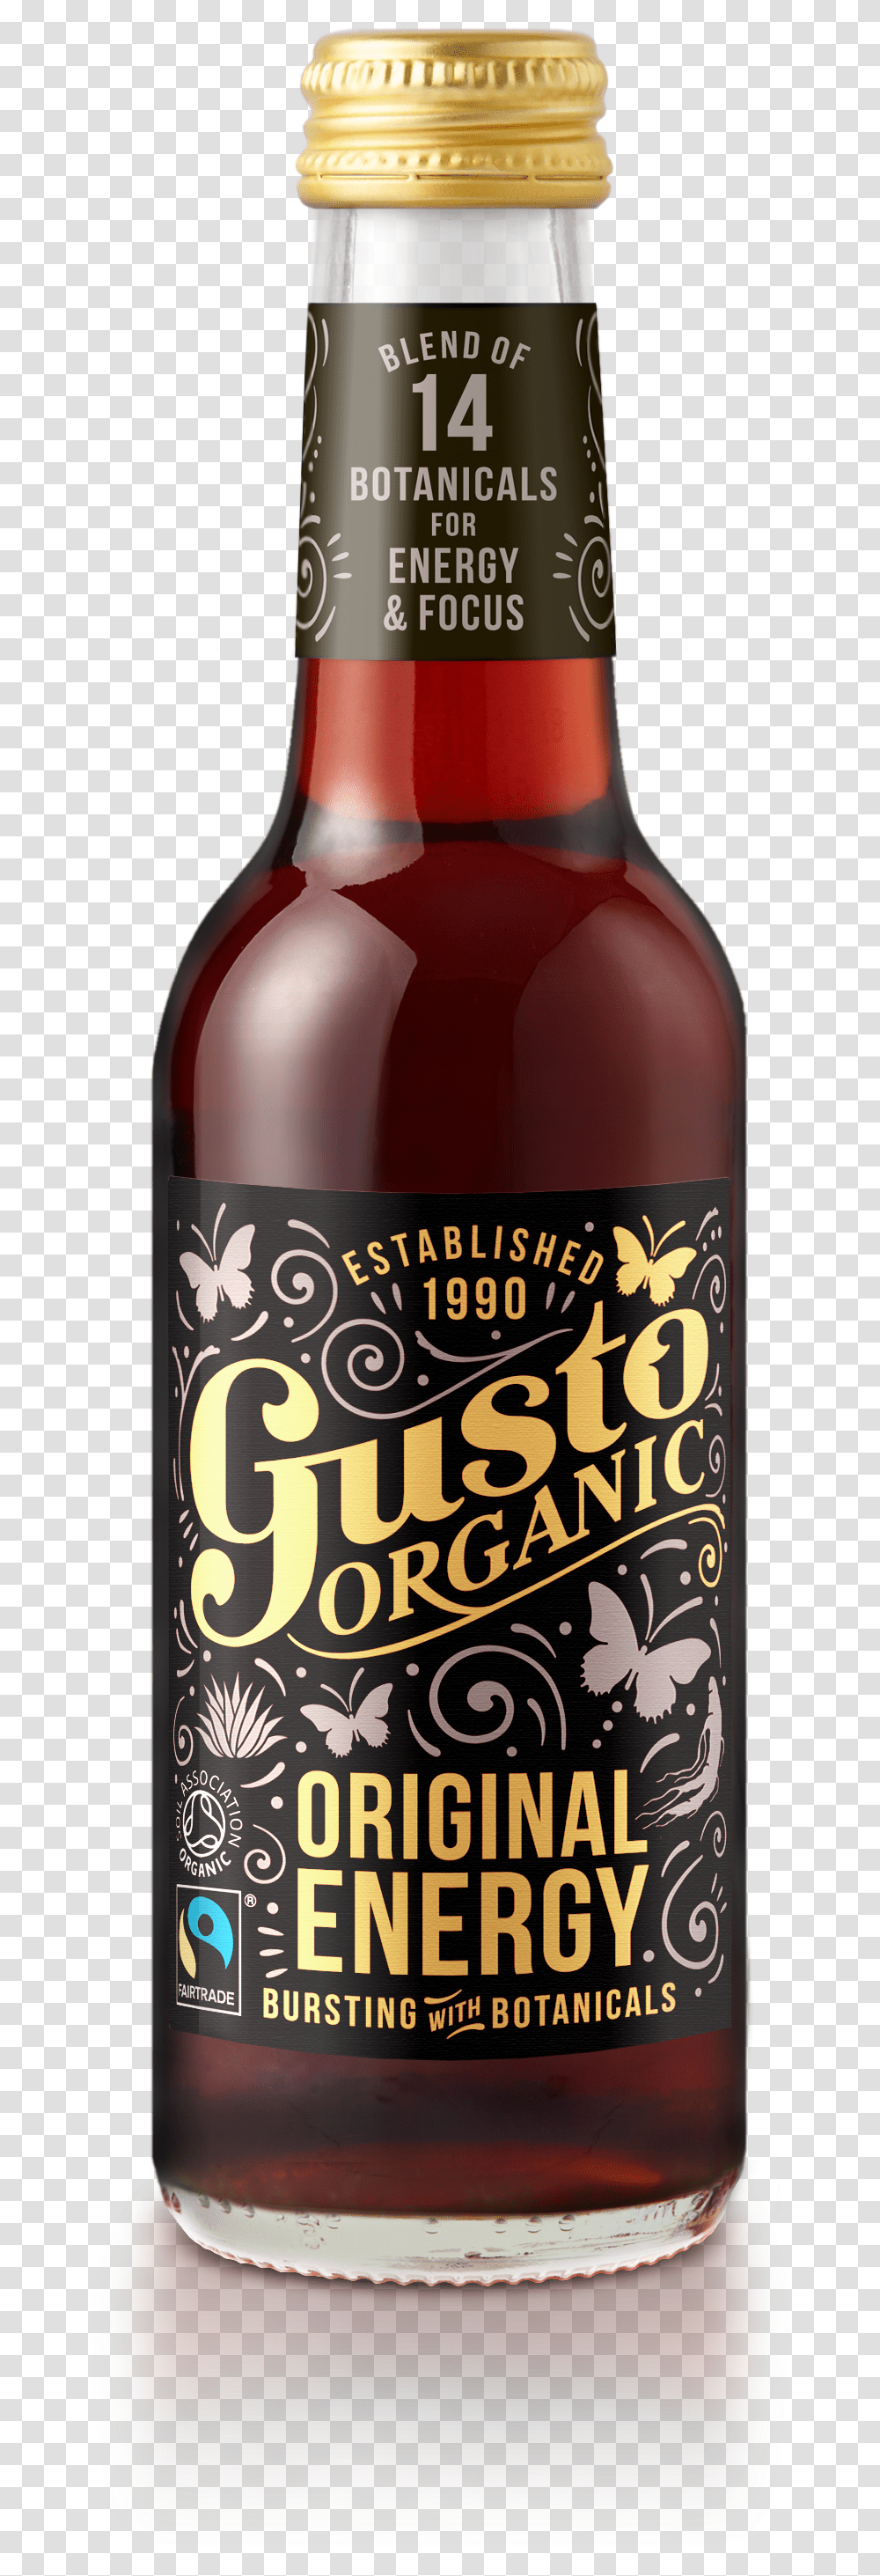 Gusto Organic Original Energy, Bottle, Beverage, Drink, Alcohol Transparent Png